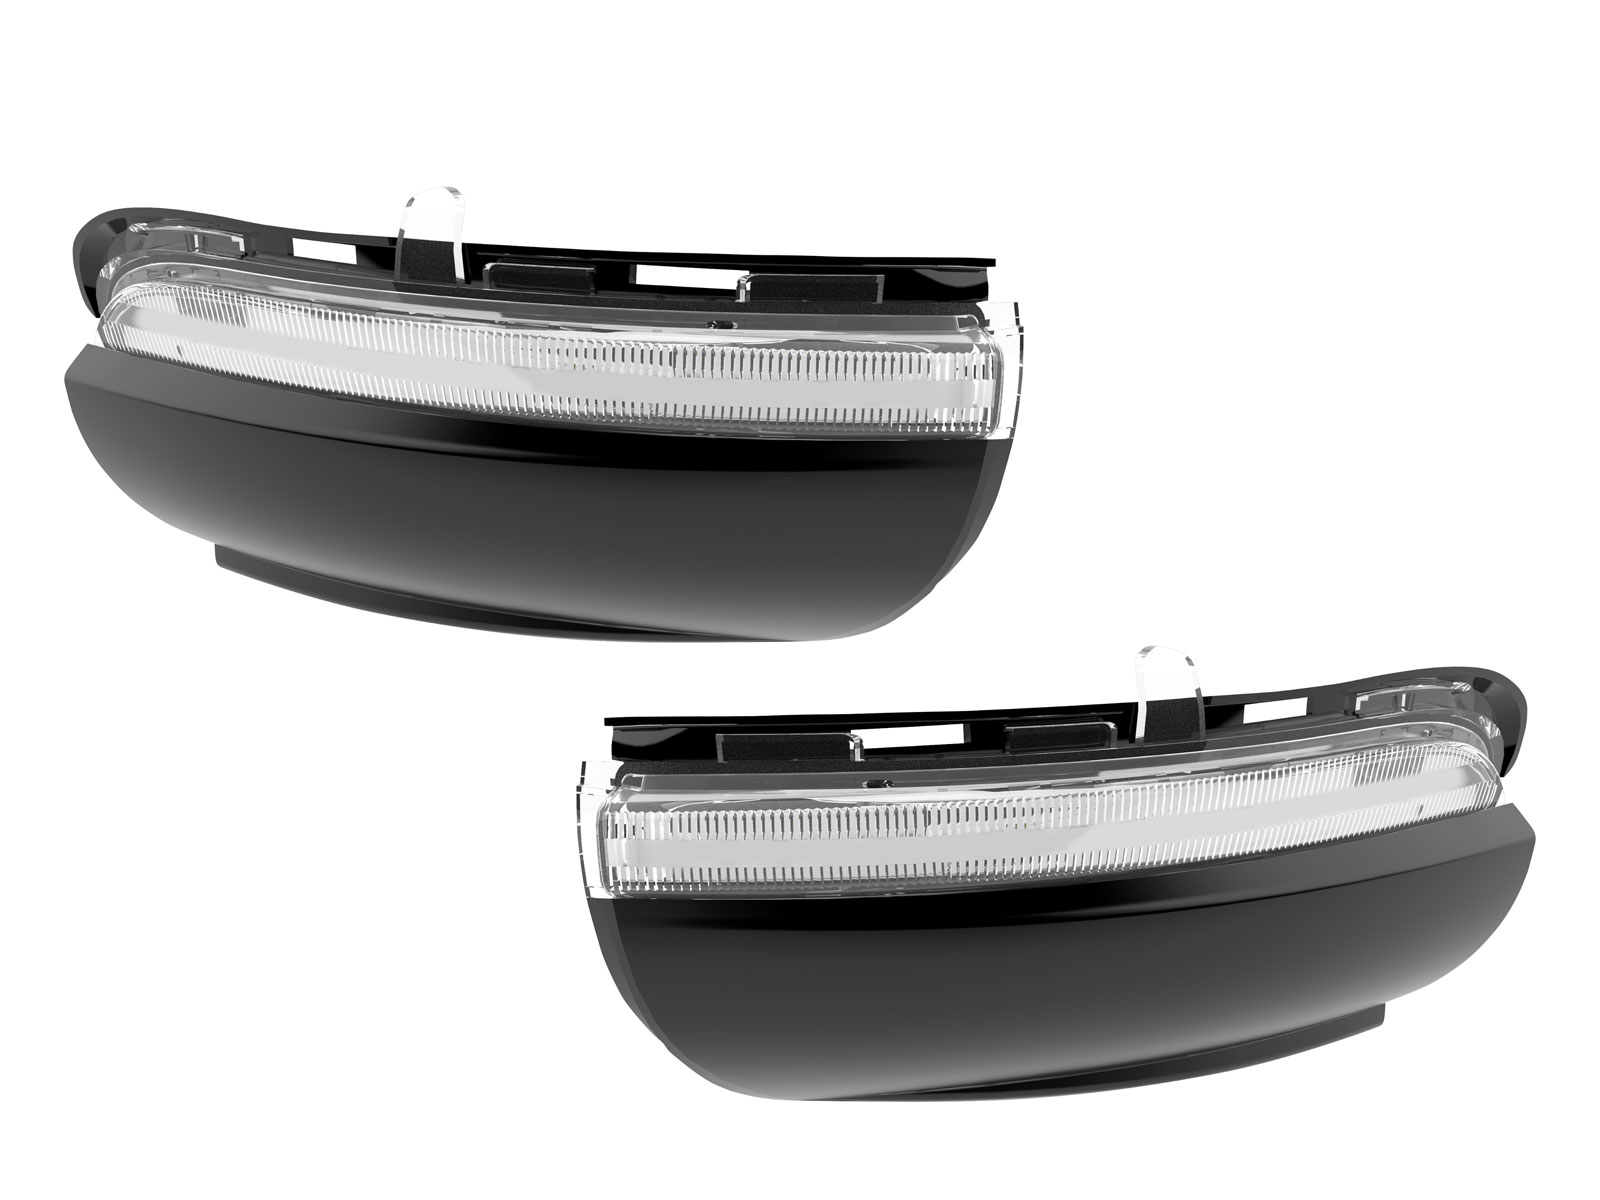 2x OSRAM Dynamische LED Spiegelblinker passt für VW Golf 7 Touran 5T Weiß